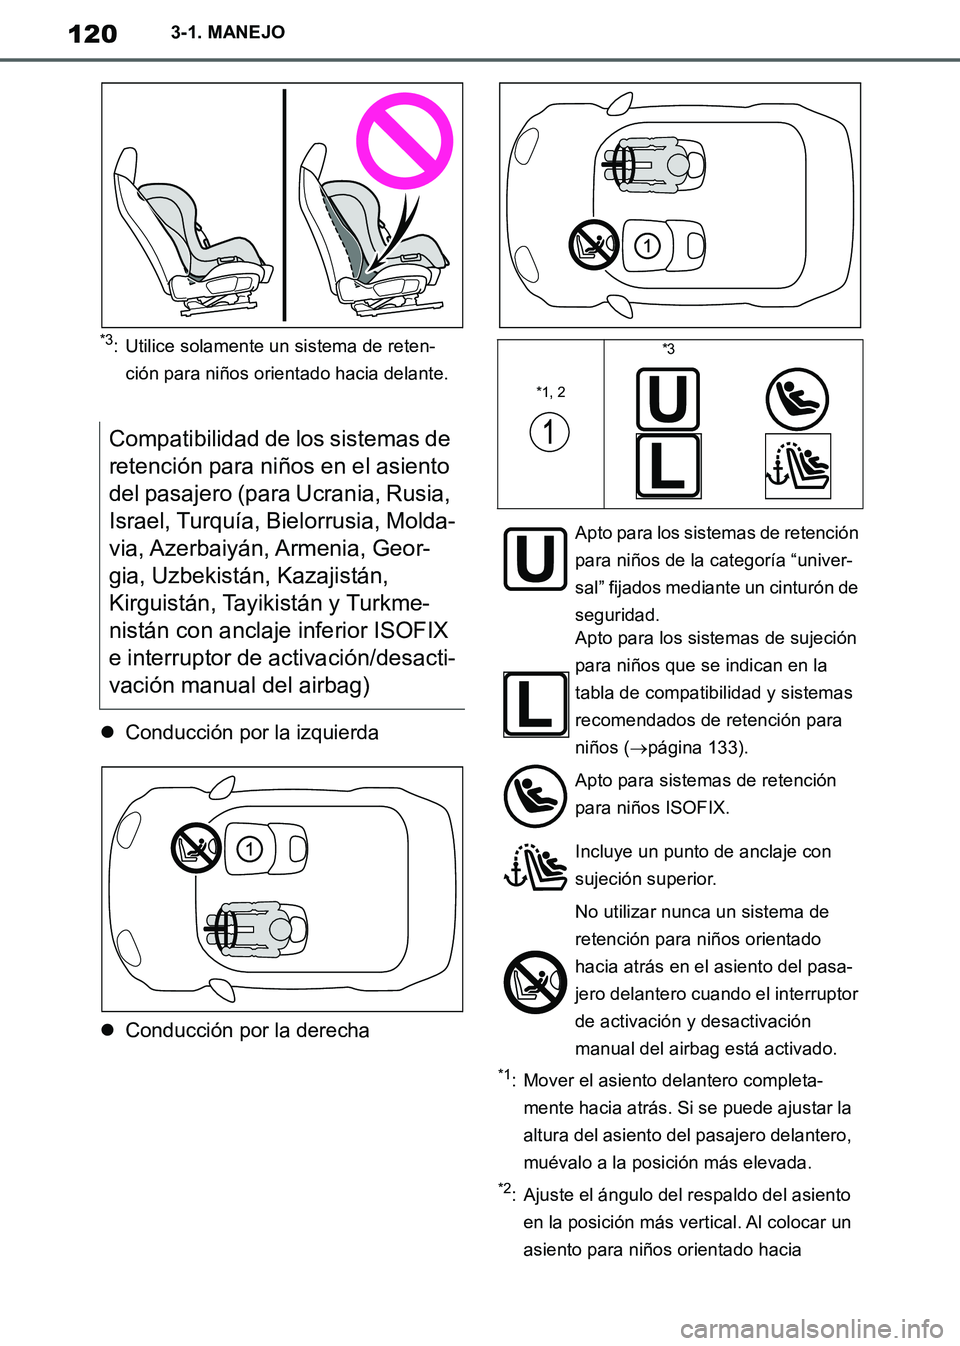 TOYOTA SUPRA 2019  Manuale de Empleo (in Spanish) 120
Supra Owners Manual_ES
3-1. MANEJO
*3: Utilice solamente un sistema de reten-
ción para niños orientado hacia delante.
Conducción por la izquierda
Conducción por la derecha
*1: Mover el